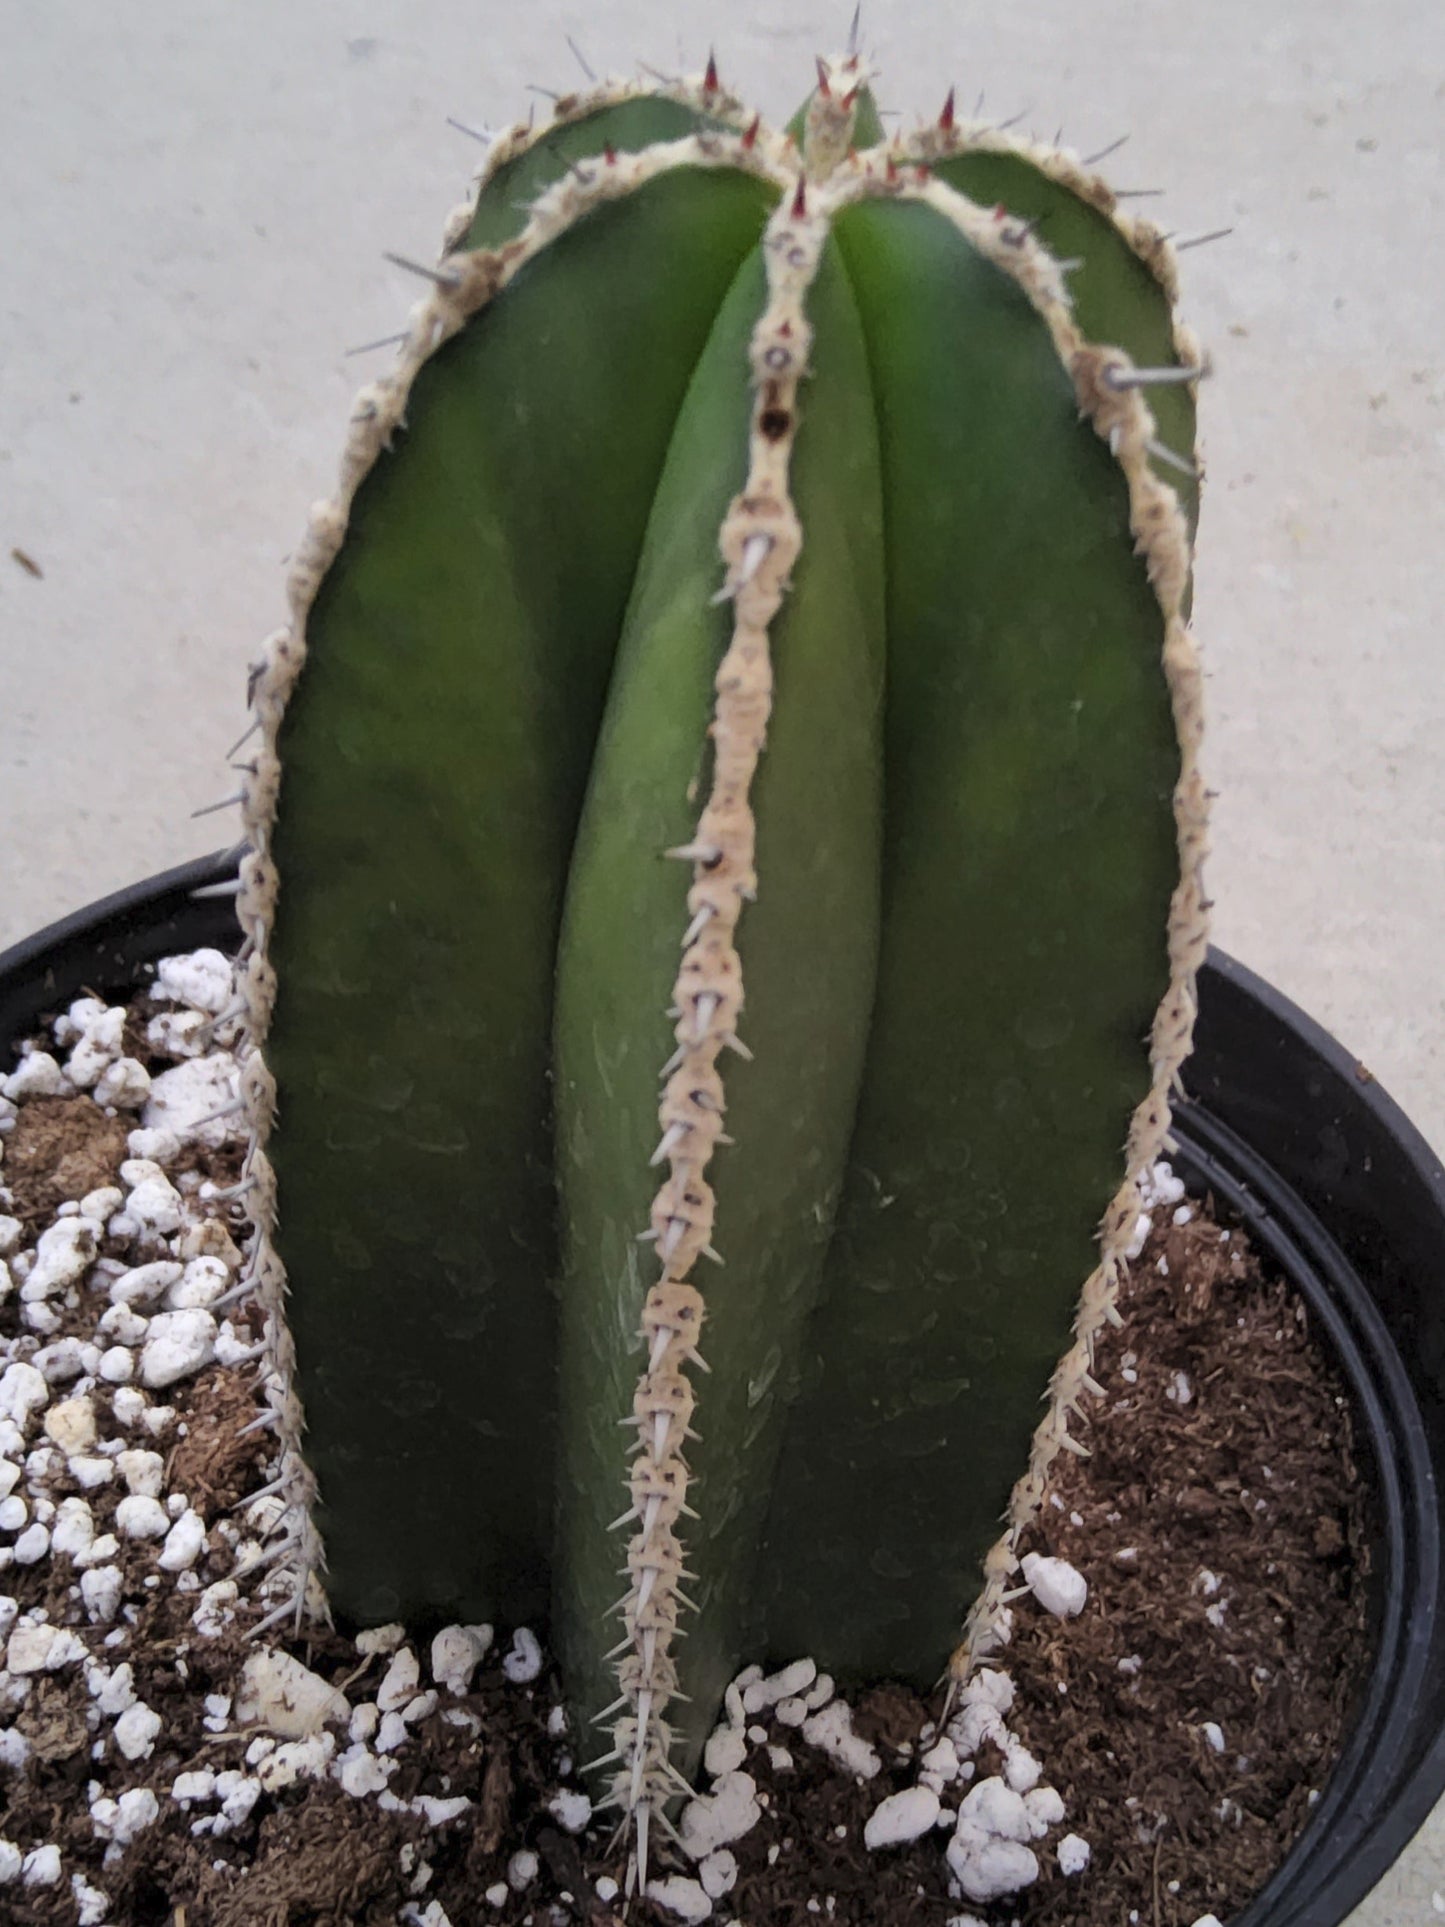 Pachycereus marginatus aka Fencepost Cactus Live Cactus Growing in 6 Inch